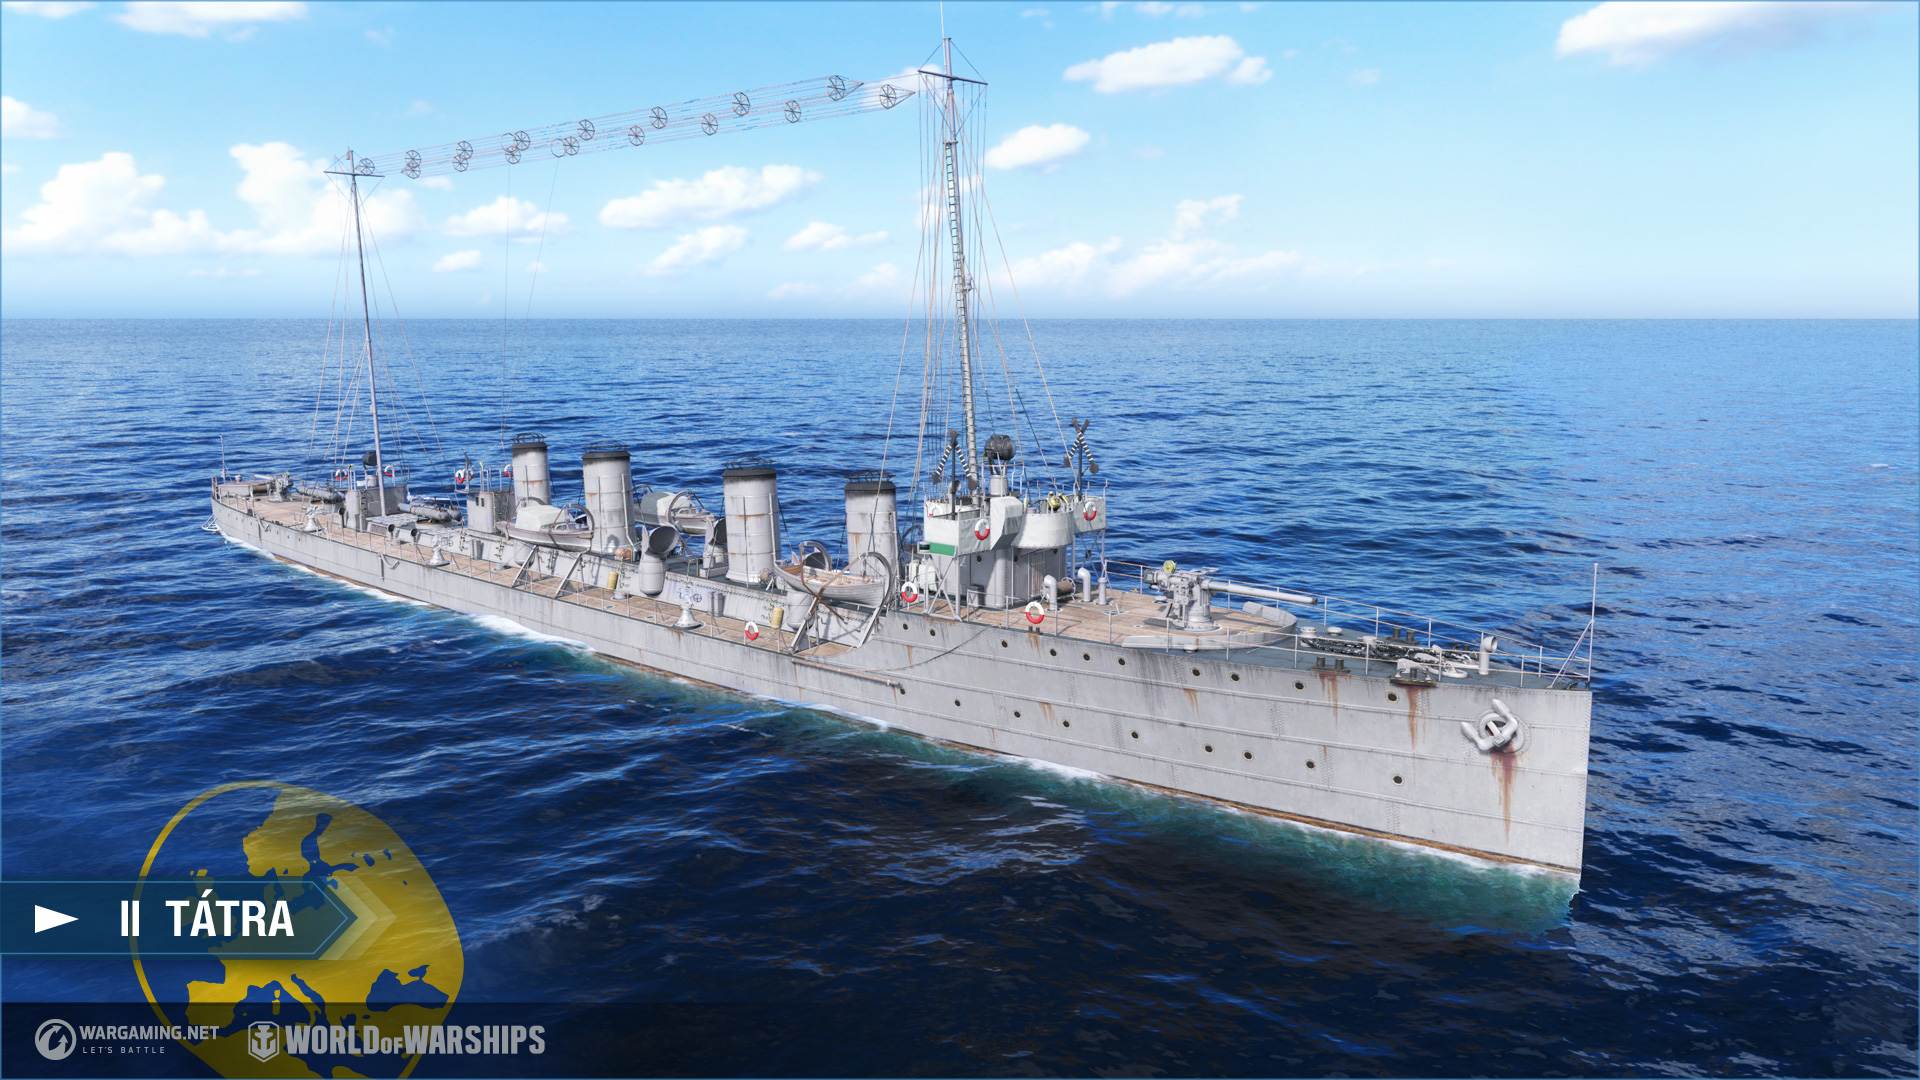 updated world of warships gun sound mod